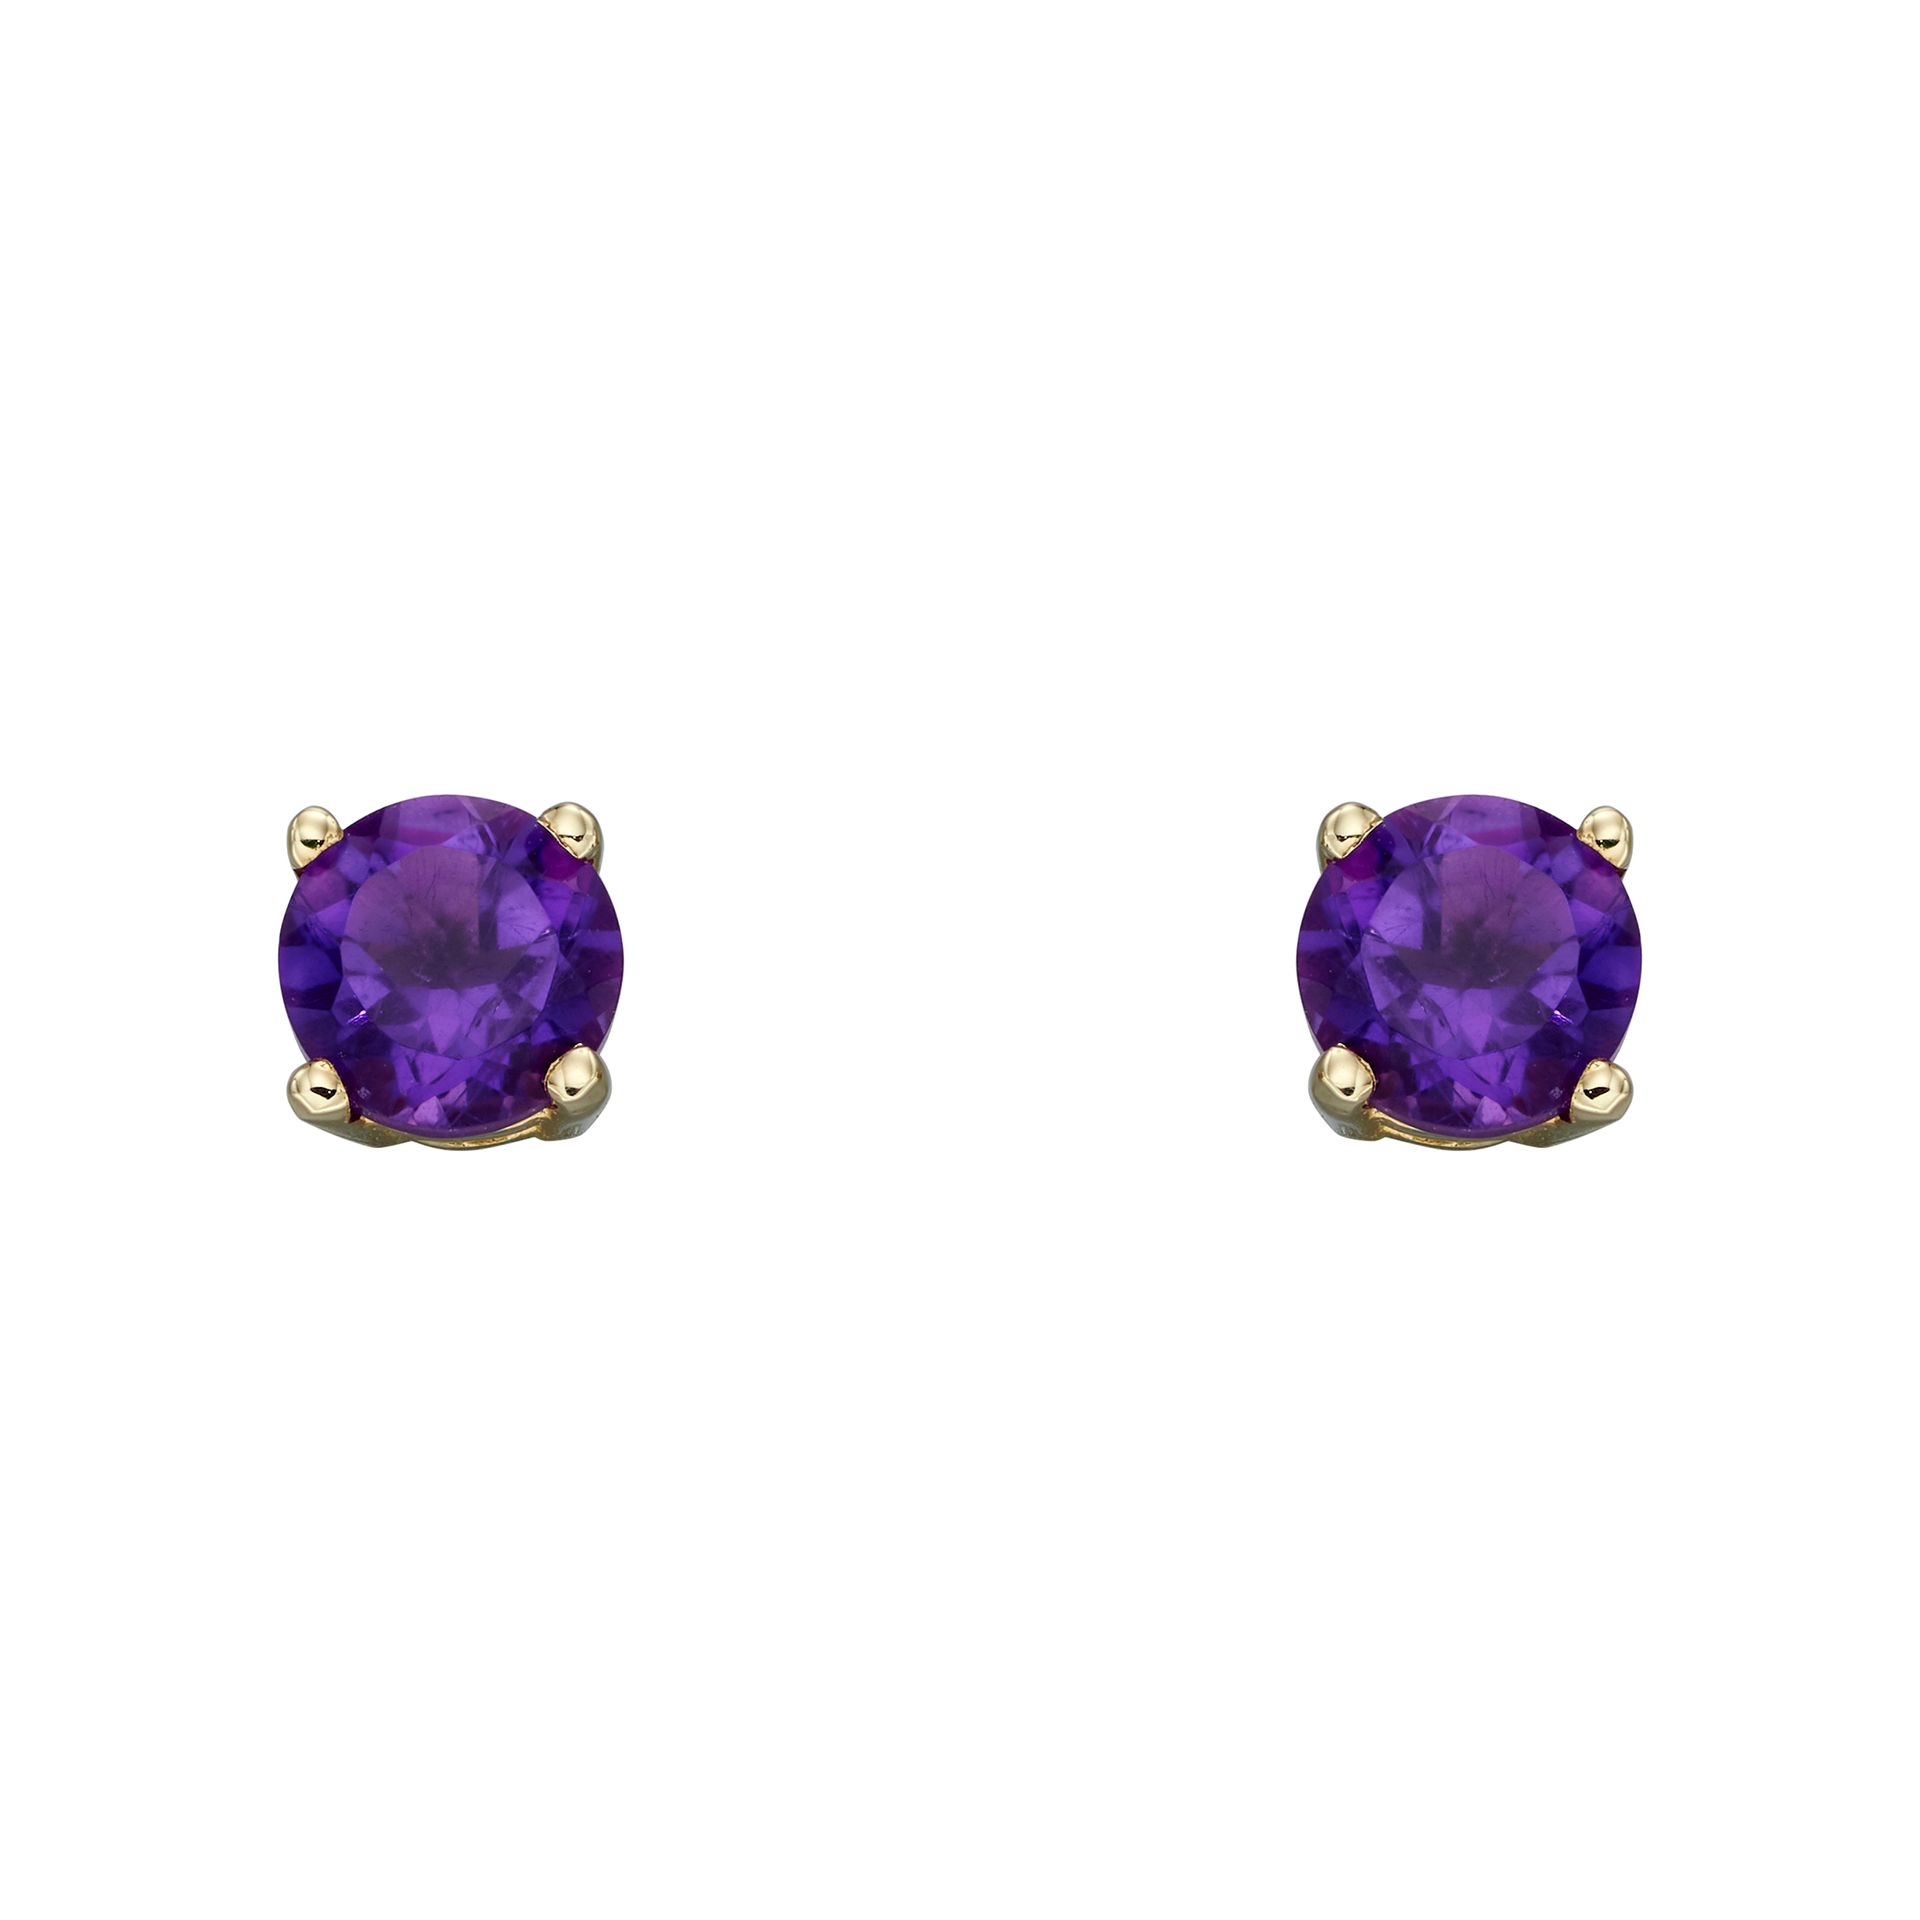 Buy Amethyst Earrings February Birthstone Purple Teardrop Dangle Online in  India  Etsy  Minimalist earrings gold February birthstone earrings  Amethyst jewelry